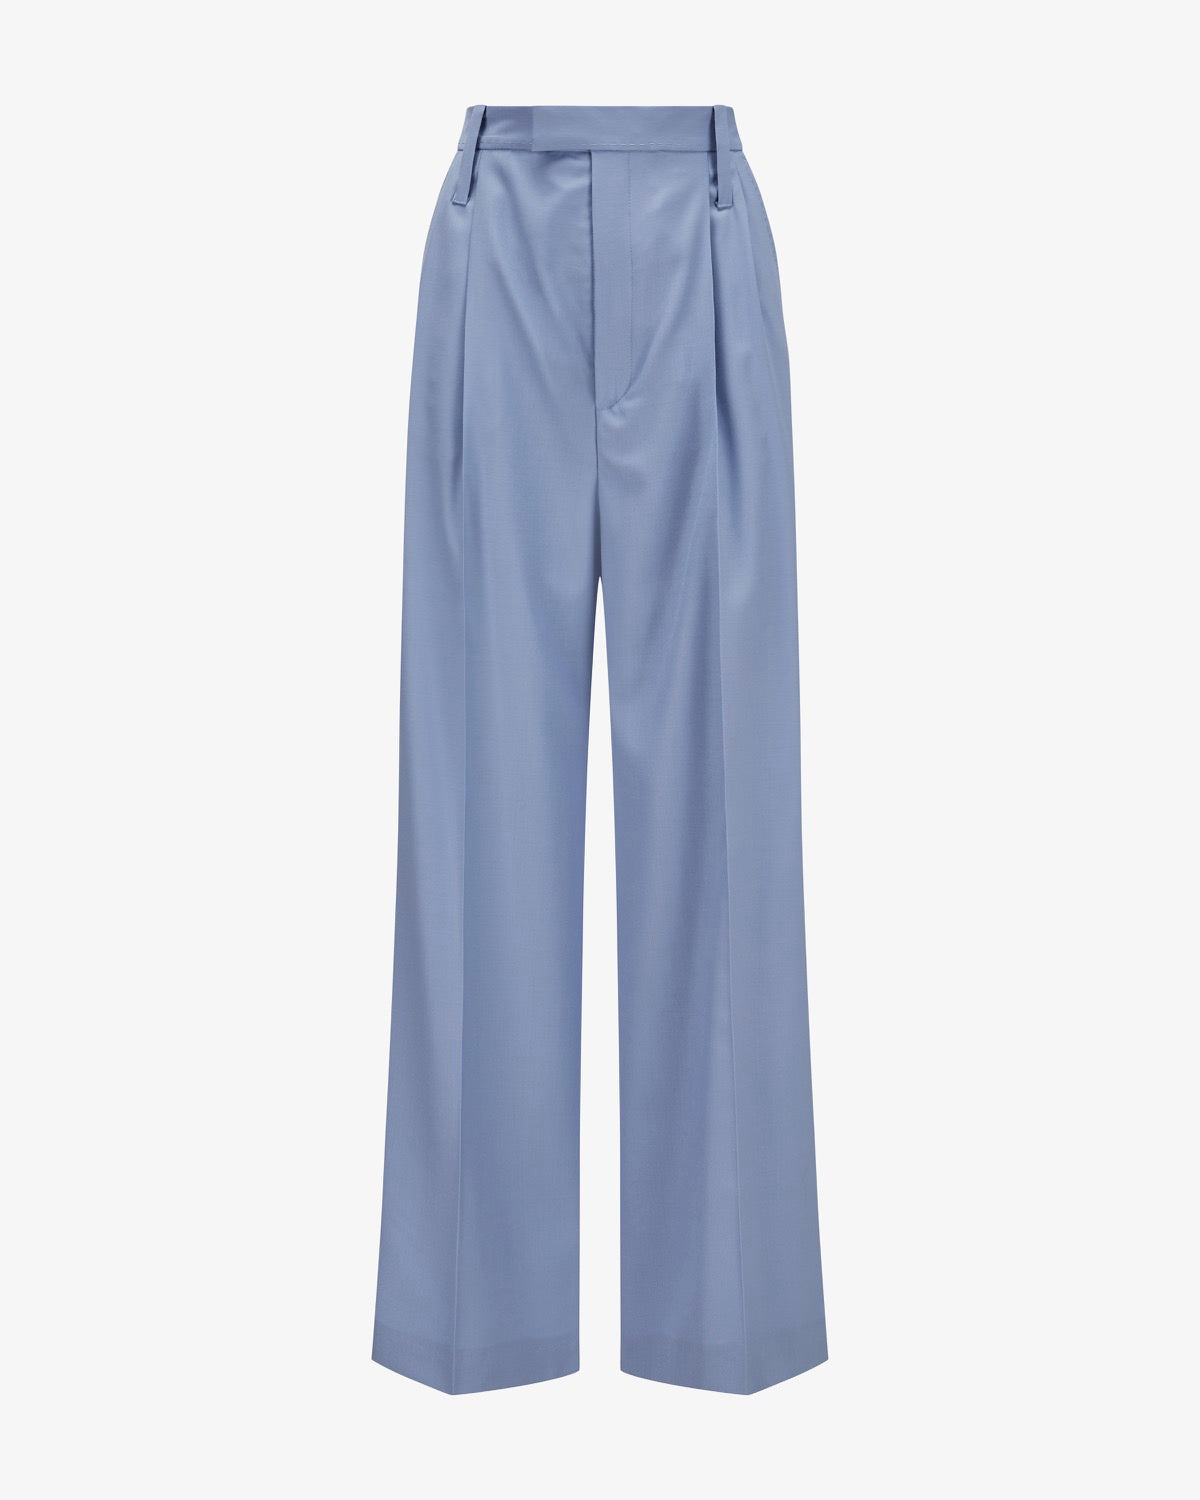 wooltwill-pants-marlene-light-blue-01.jpg